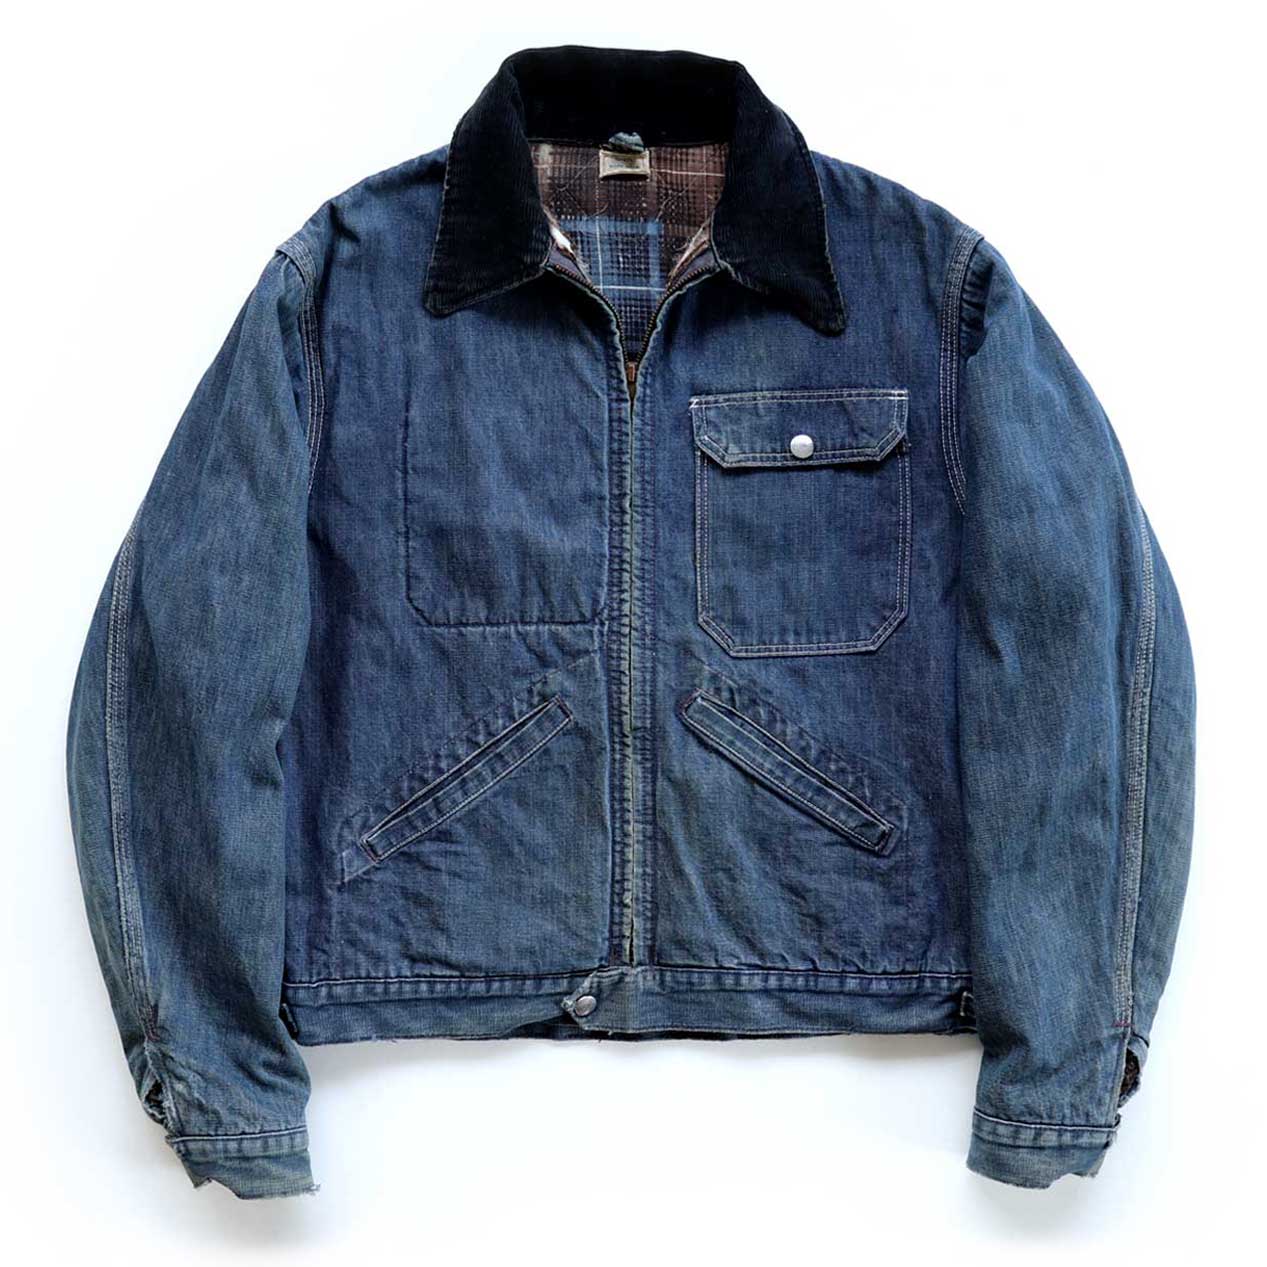 【Vintage】00s Stitch denim work jacket